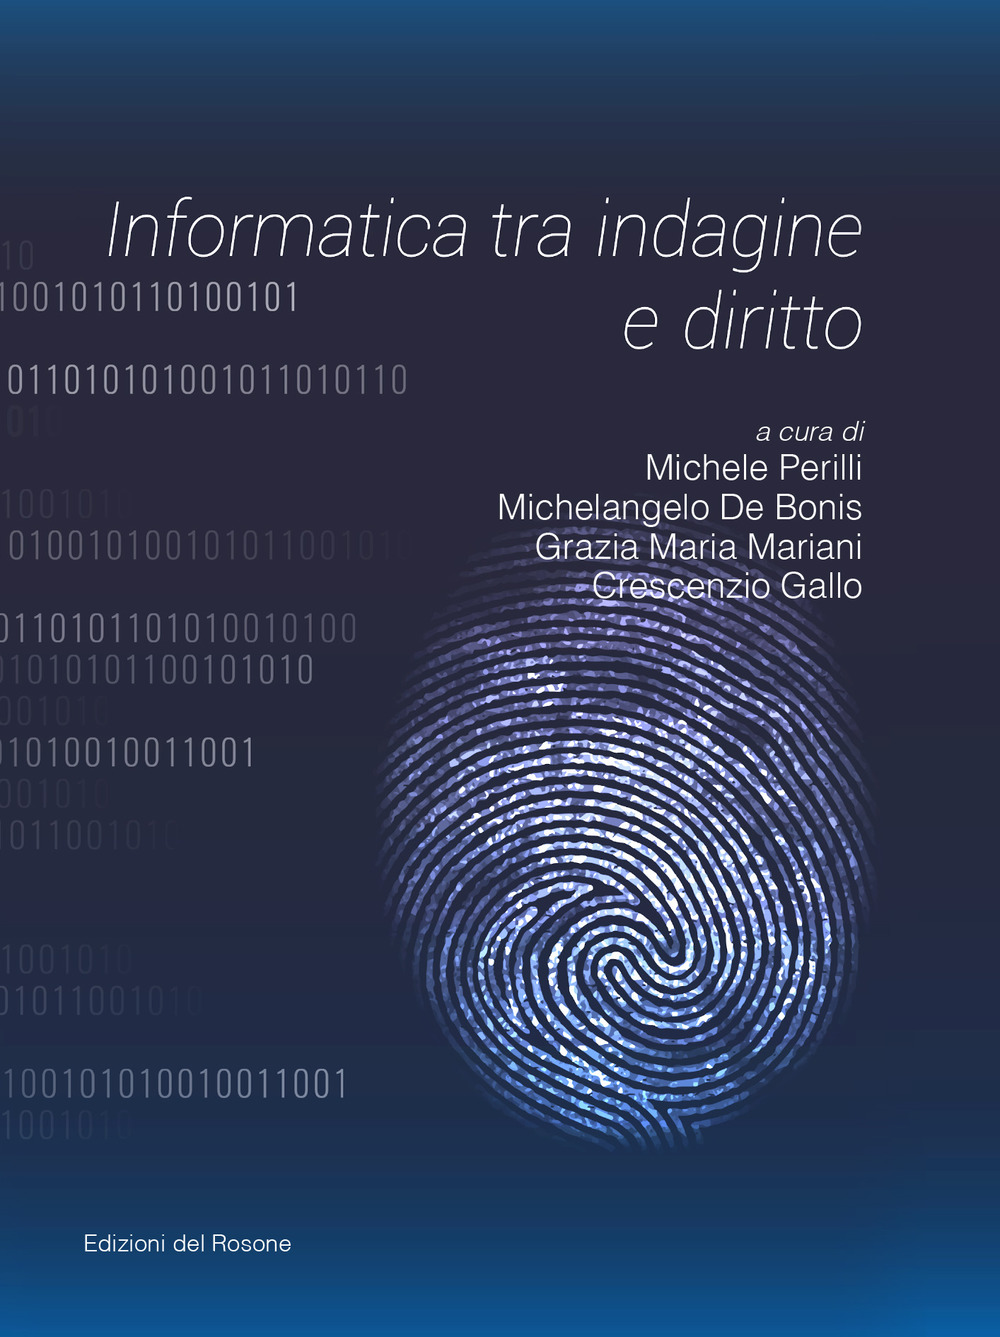 Image of Informatica tra indagine e diritto